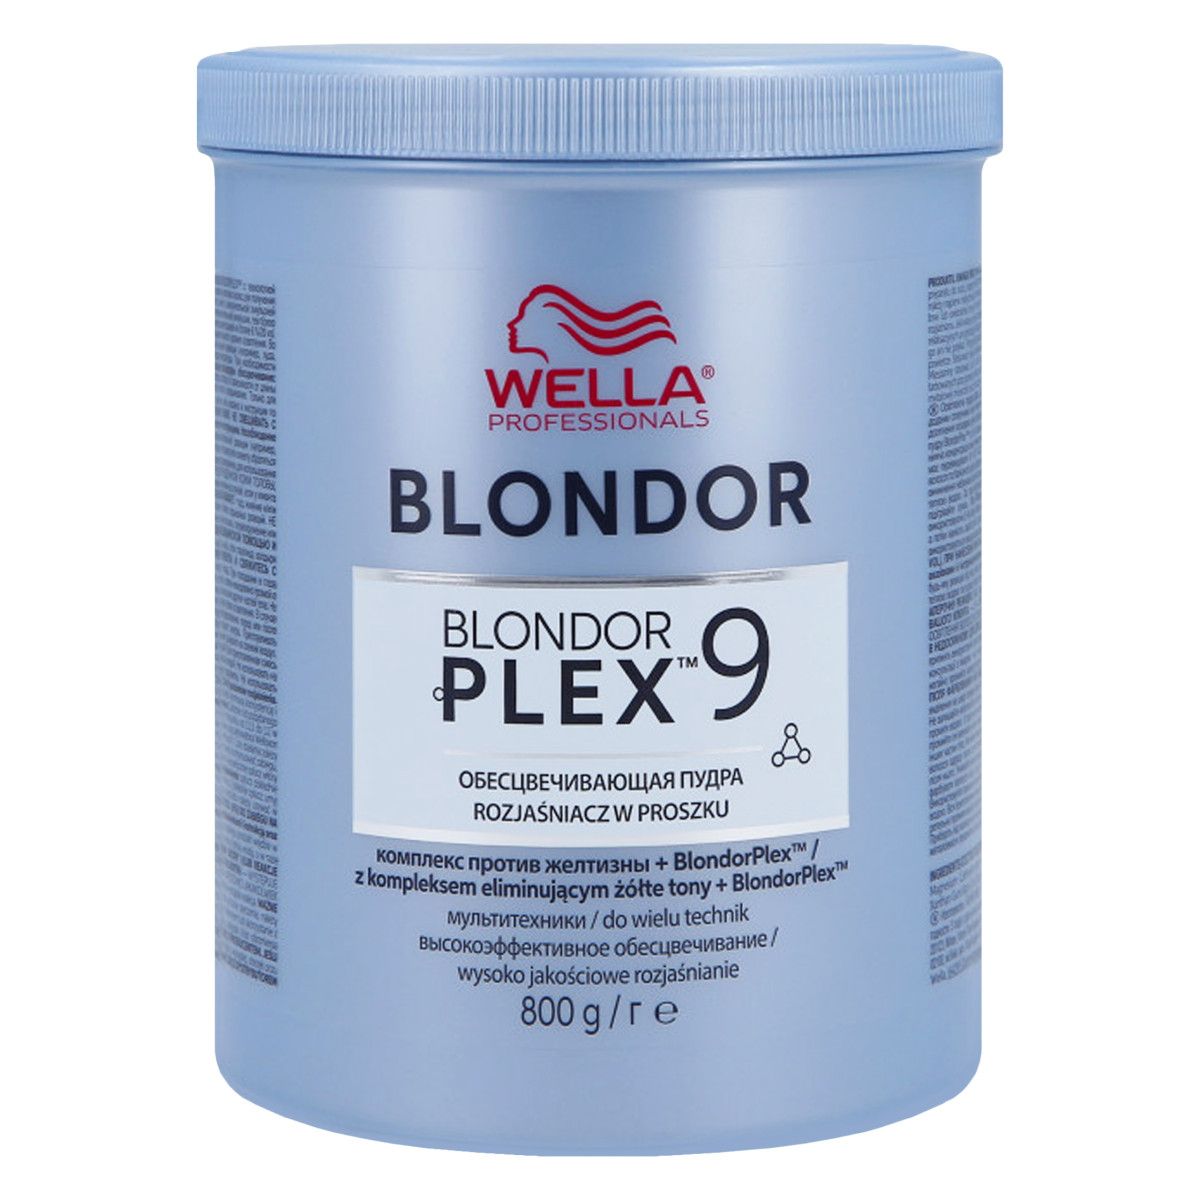 Wella Blondorplex Multi Blonde Powder Rozjaśniacz w proszku 800 g